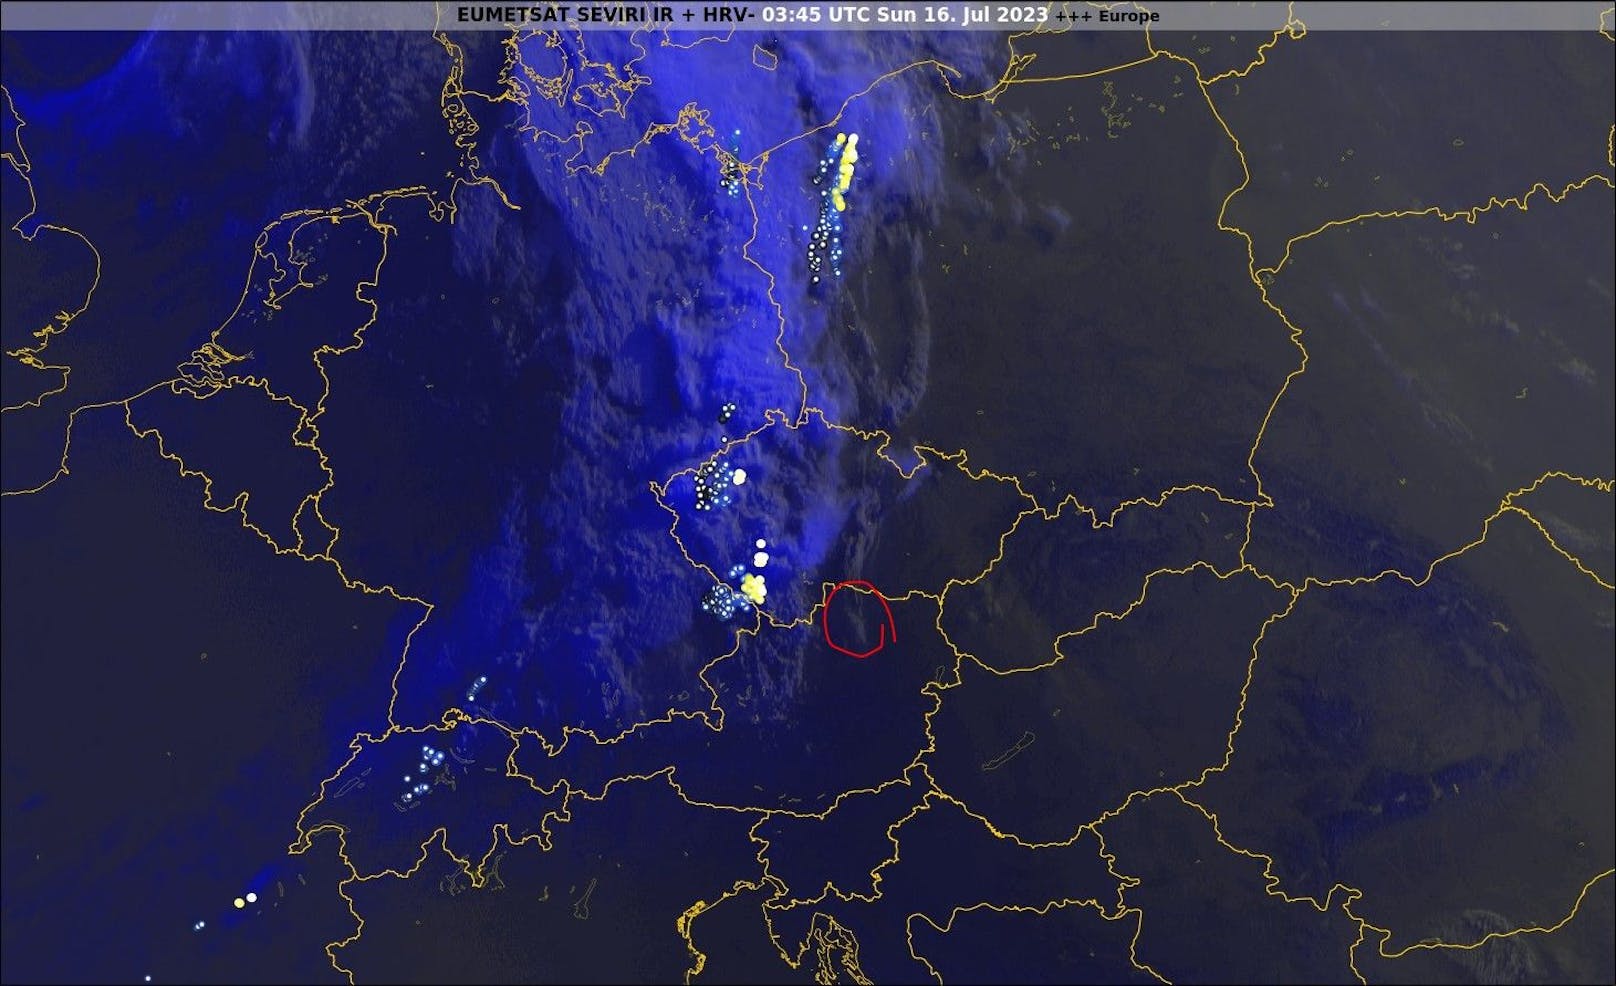 Der Wetterdienst UBIMET bestätigt das Naturspektakel mit einem Satellitenbild.